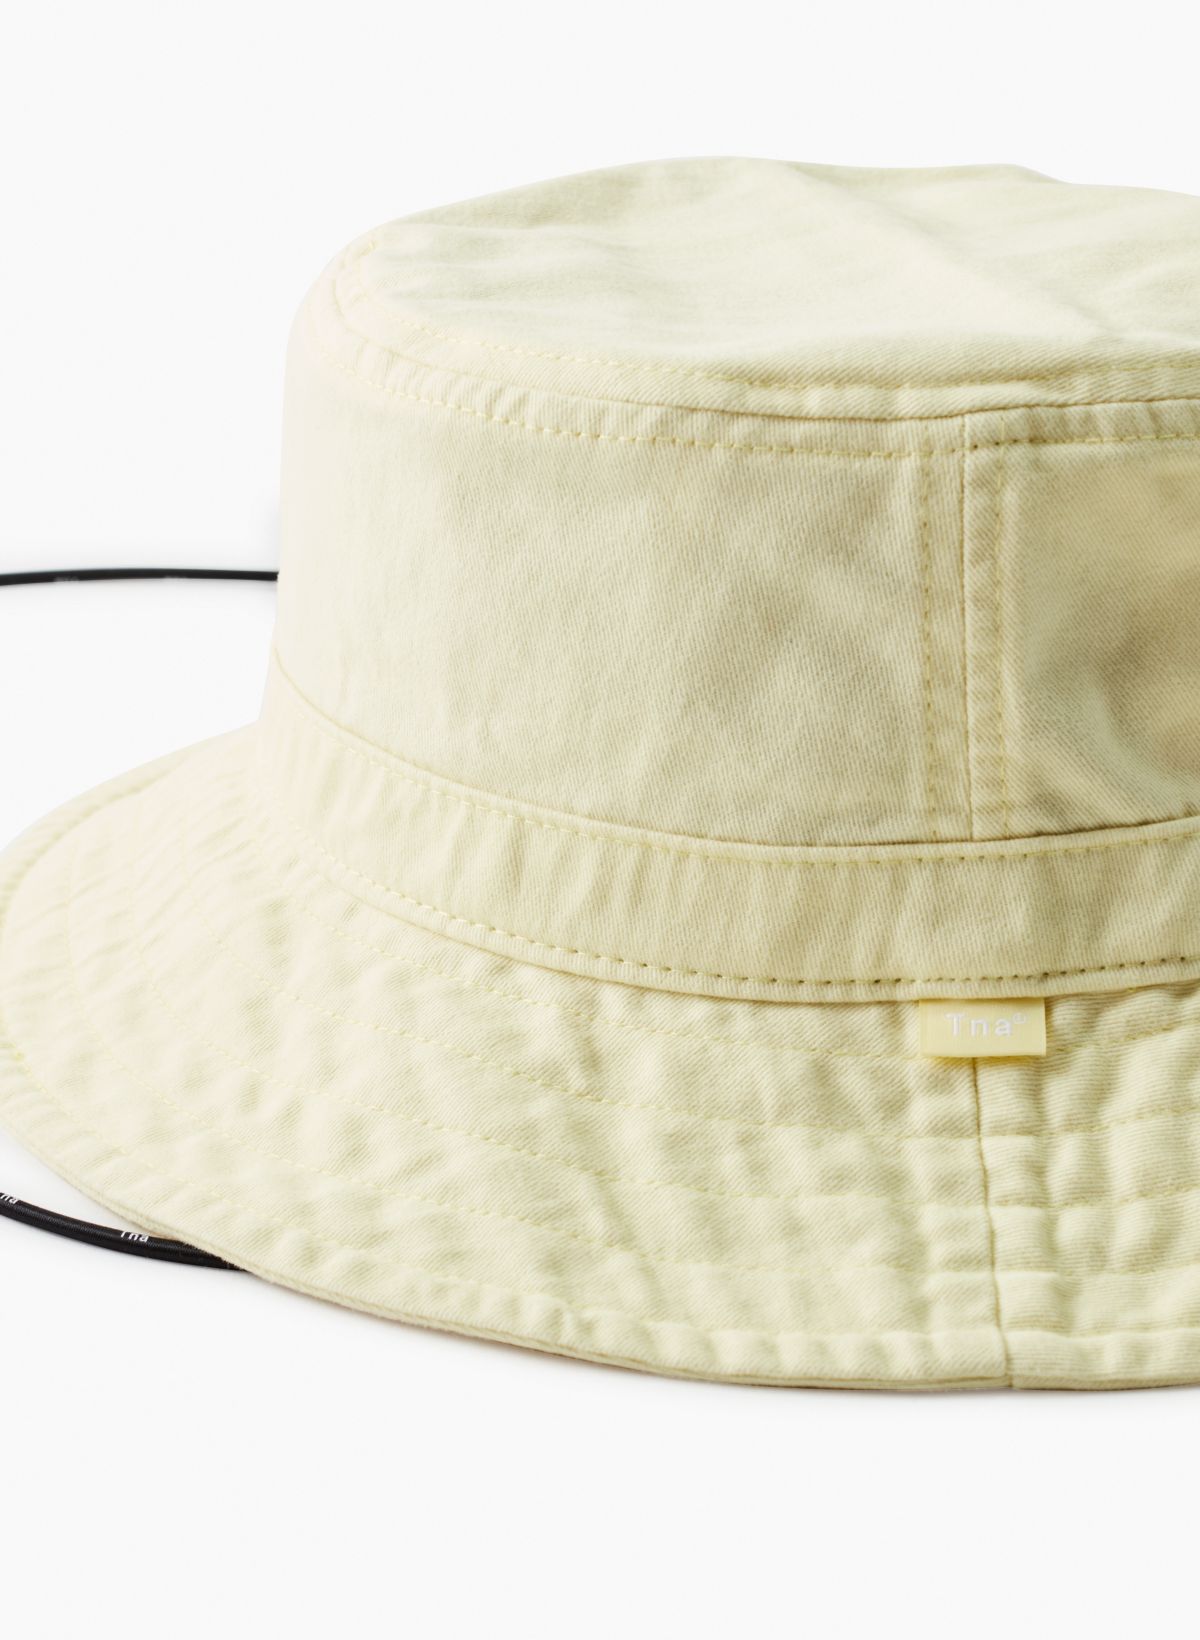 Calvin Klein Men's Embroidered Logo Bucket Hat